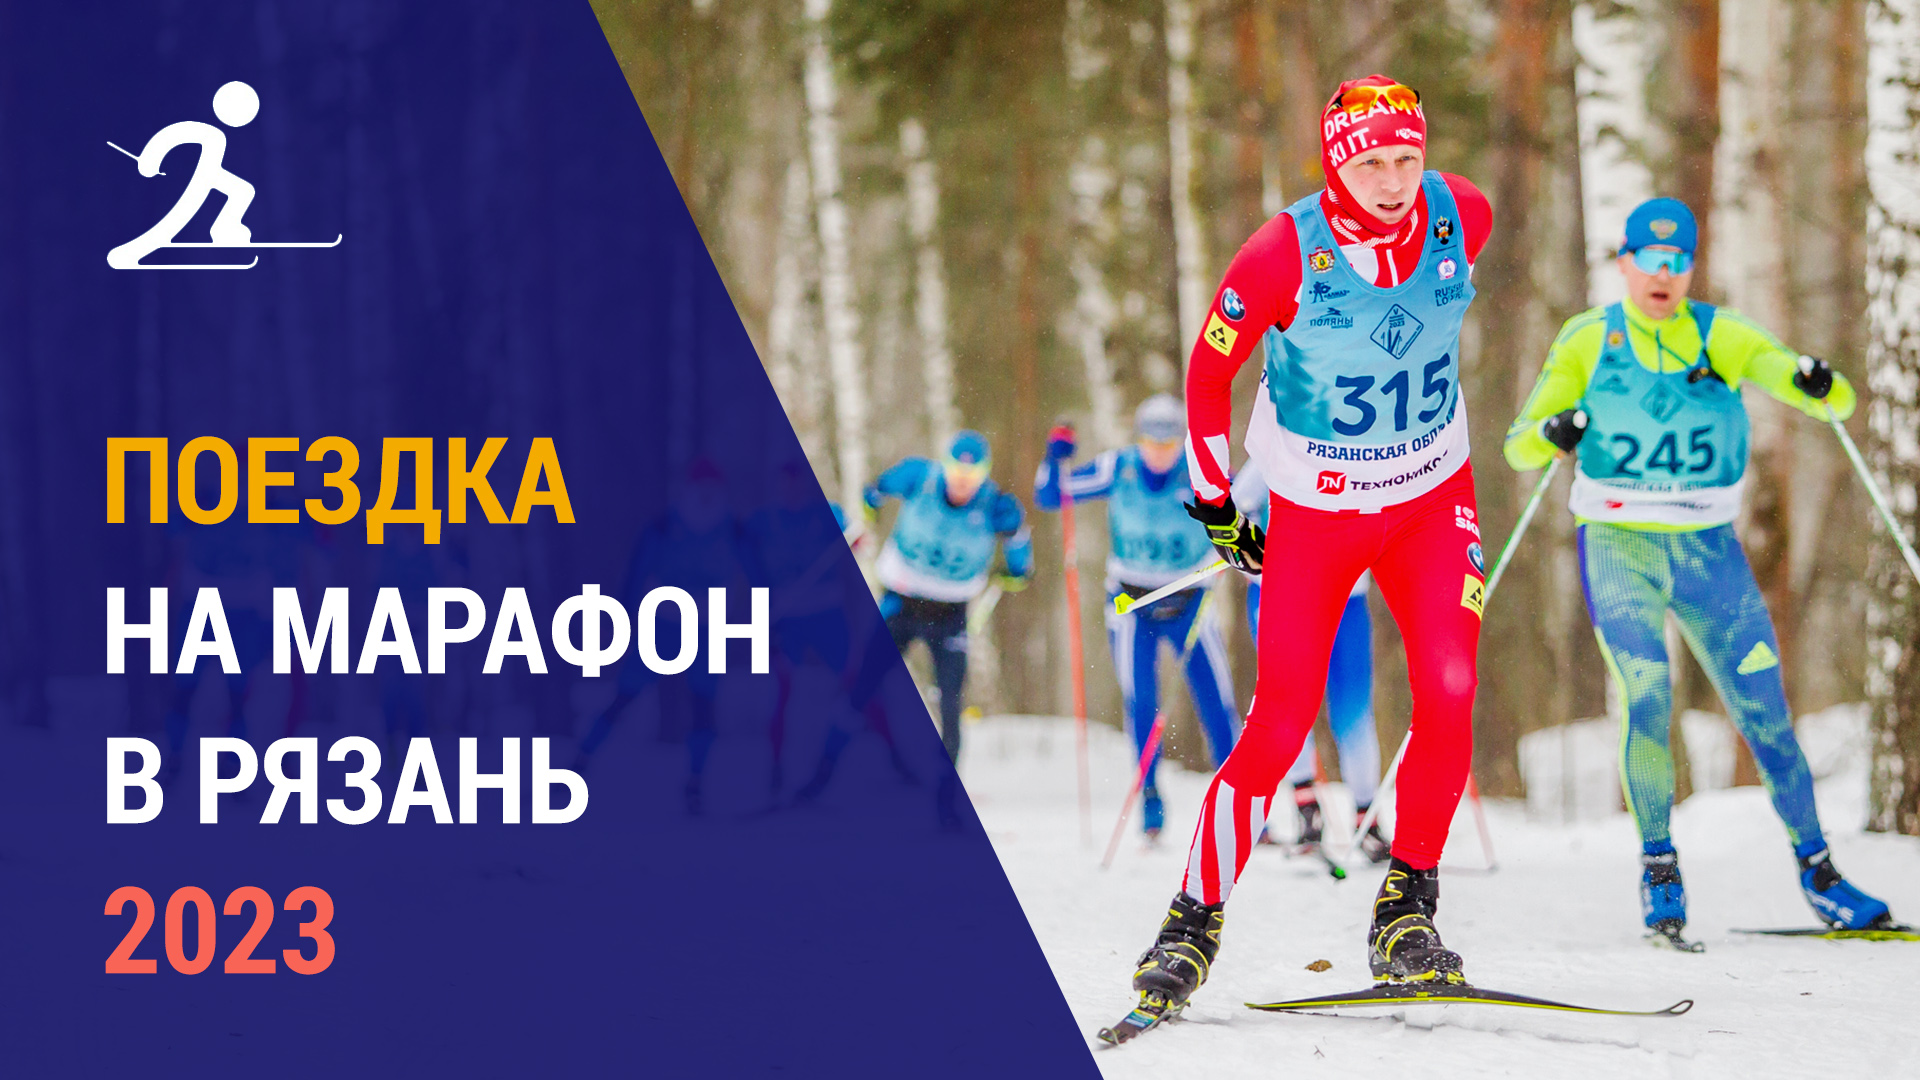 Поездка на марафон Экопарк-ски в Рязань